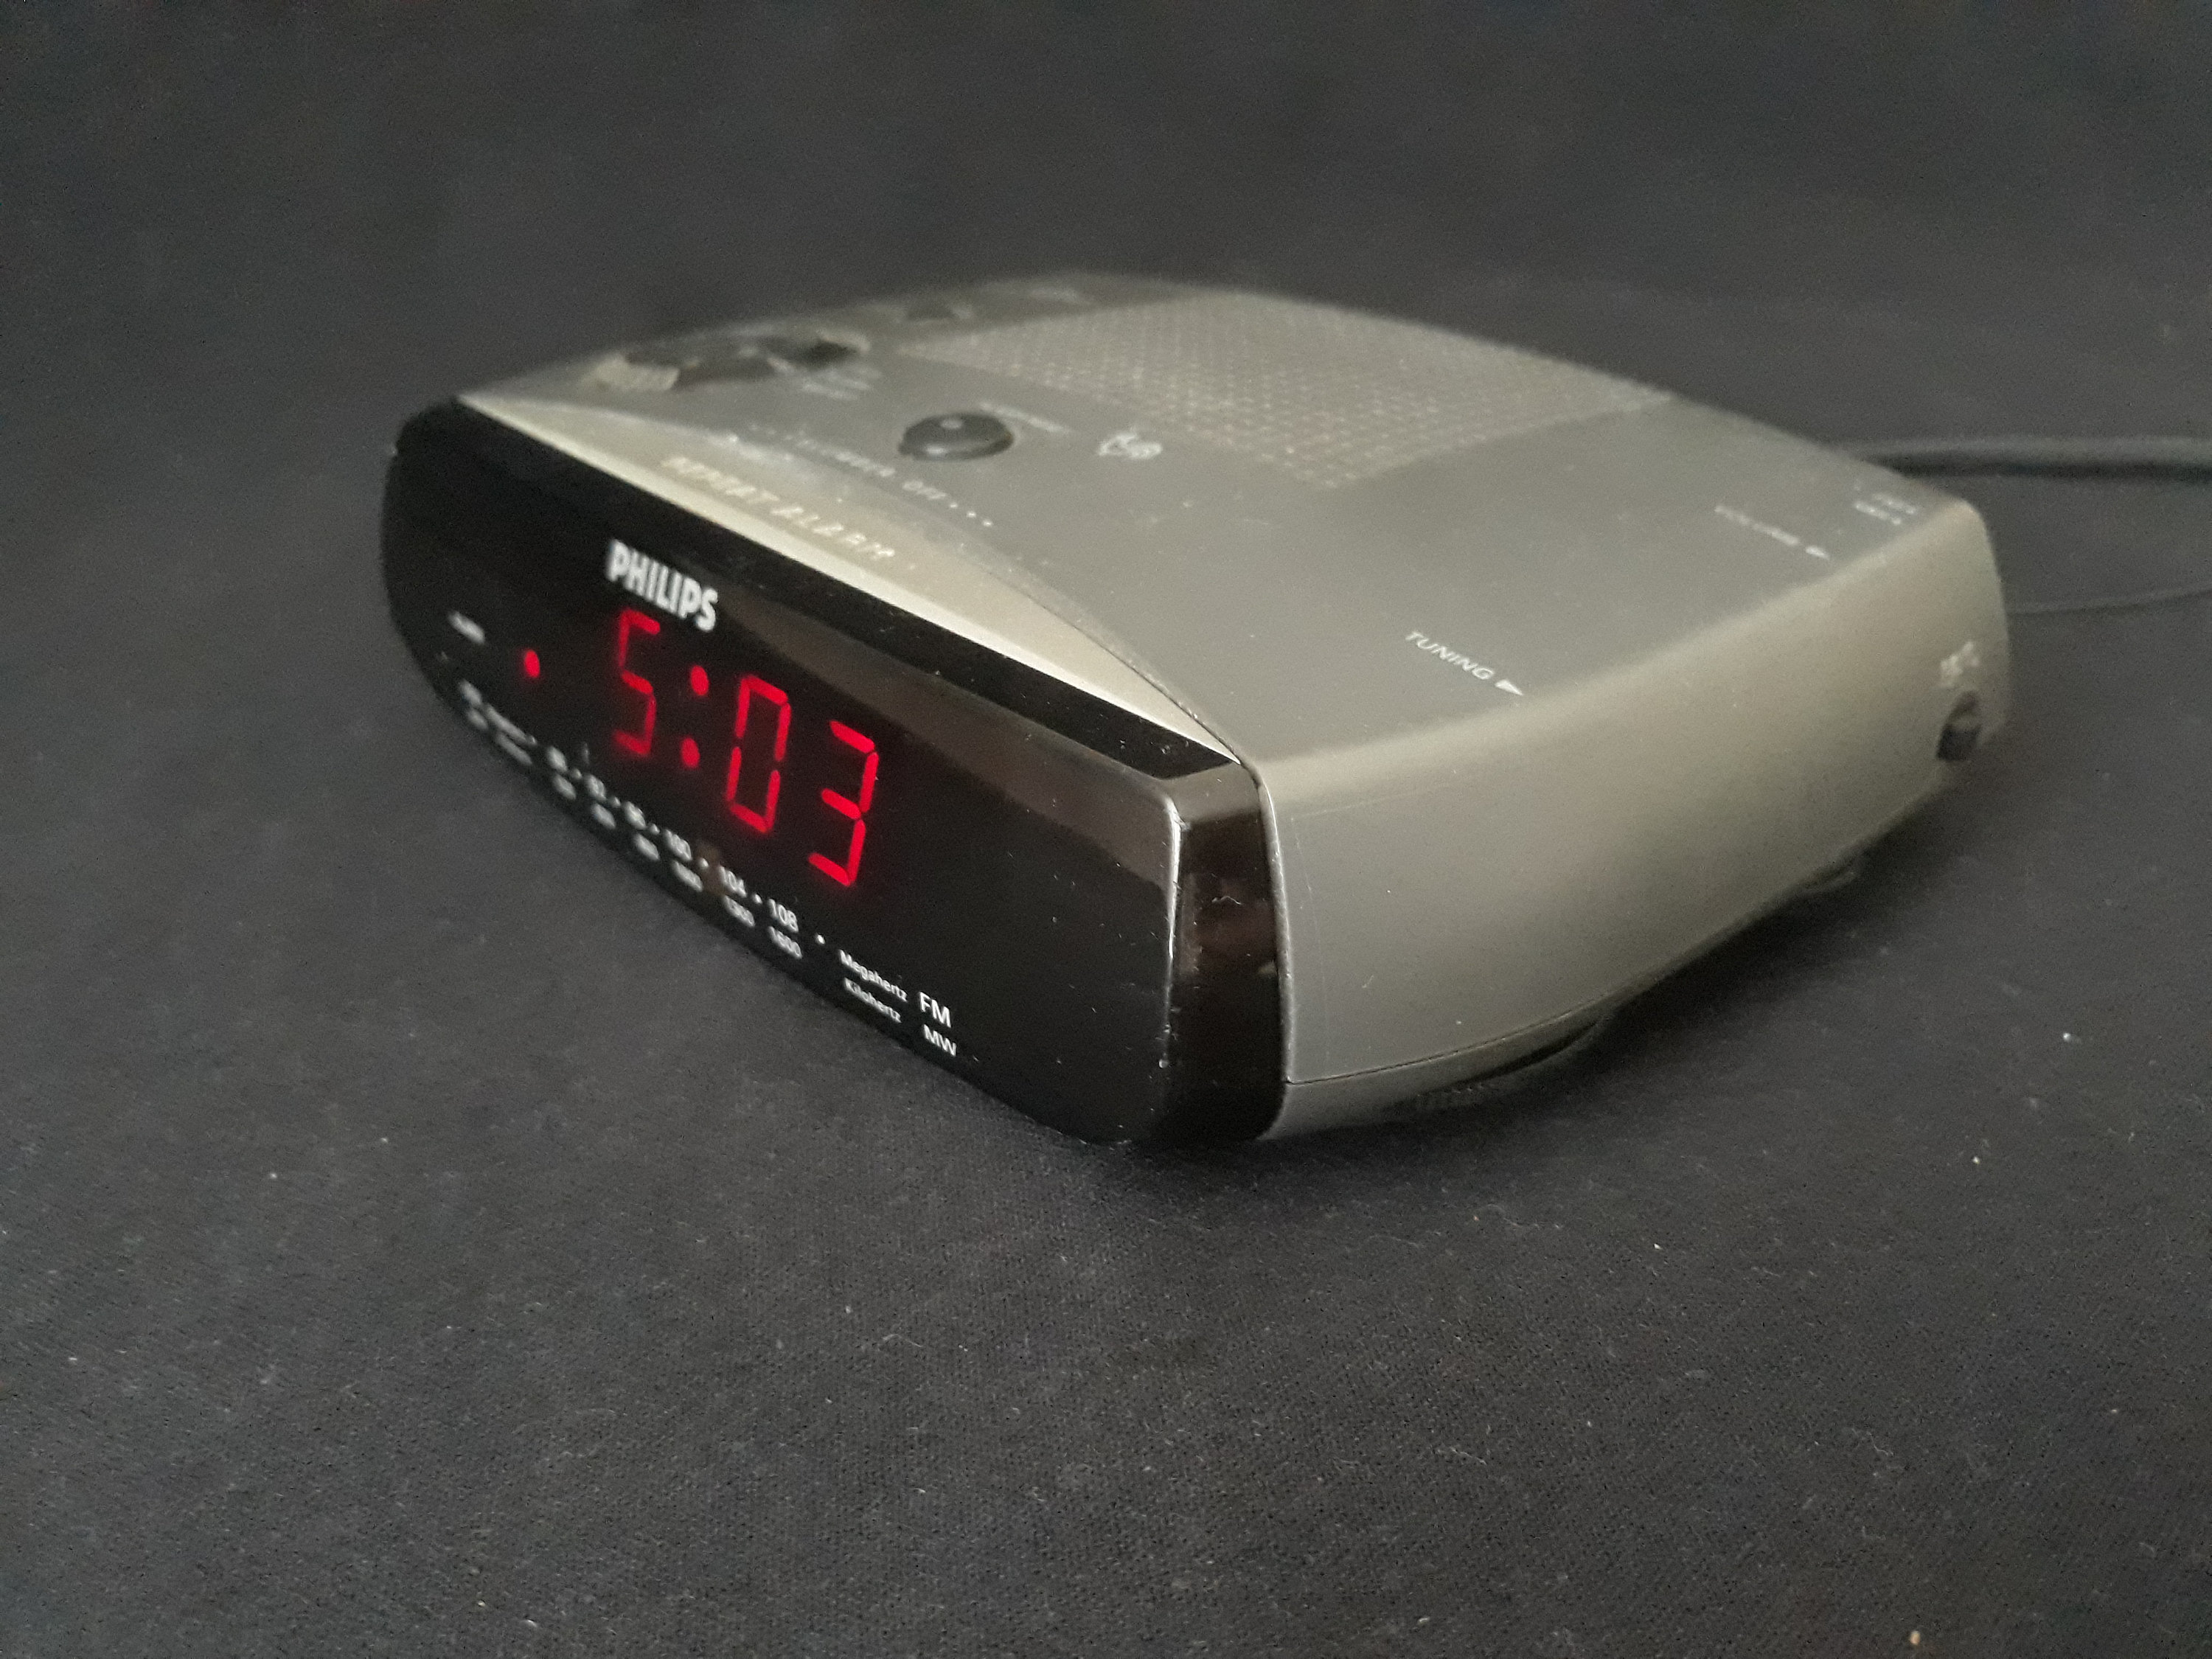 Reloj despertador electrónico de viaje Philips HR5278/de colección/raro/era  espacial/años 90